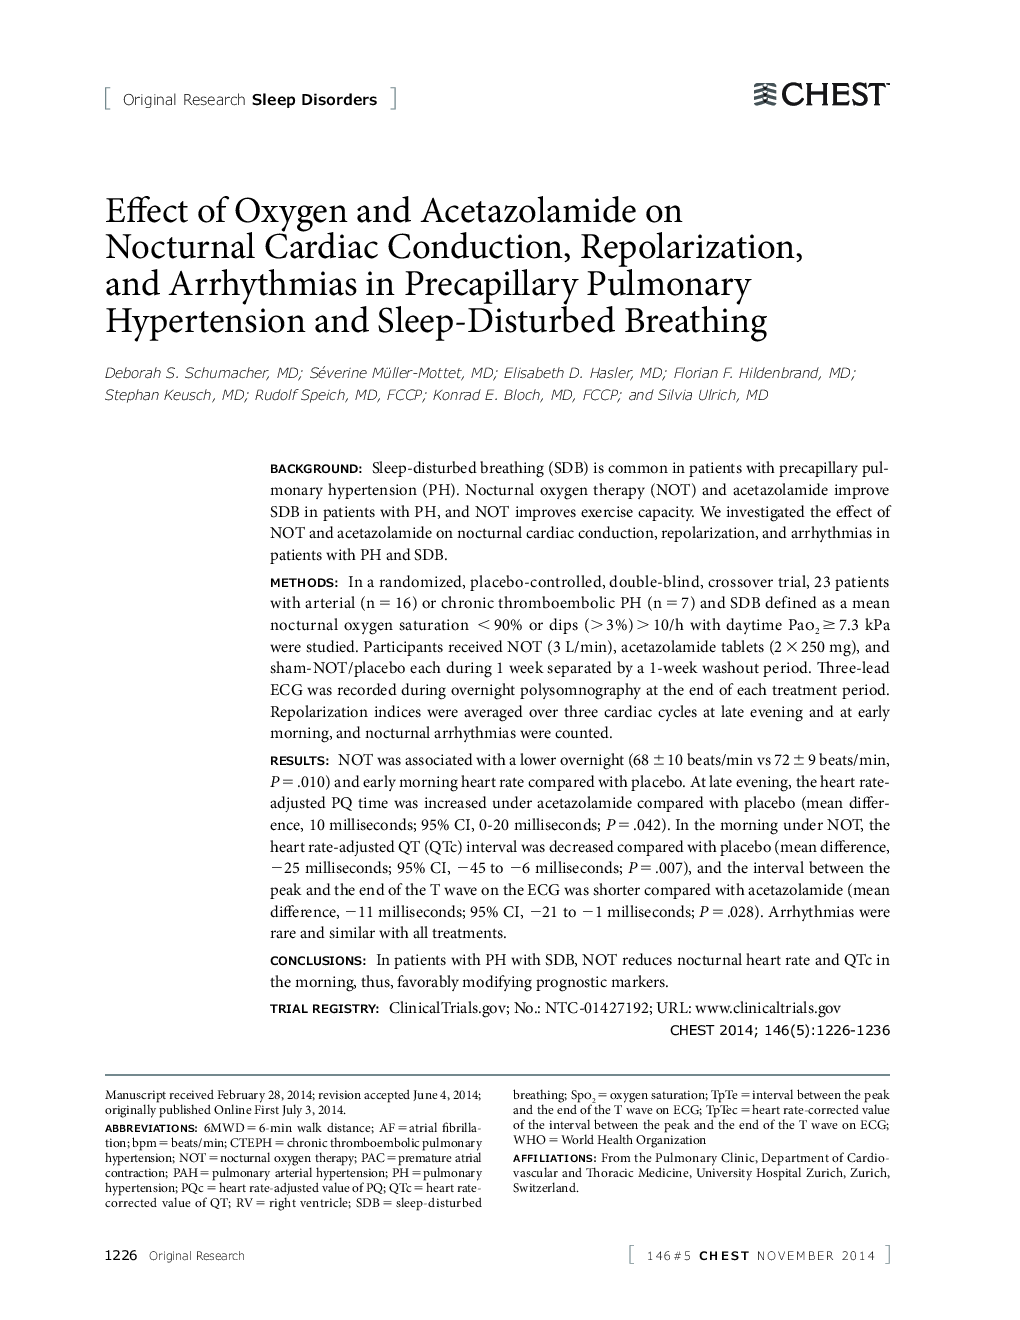 تأثیر اکسیژن و استازولامید در انجام فعالیتهای قلبی عروقی، رگولاراسیون و آریتمی در فشار خون بالا و اختلال در خواب 